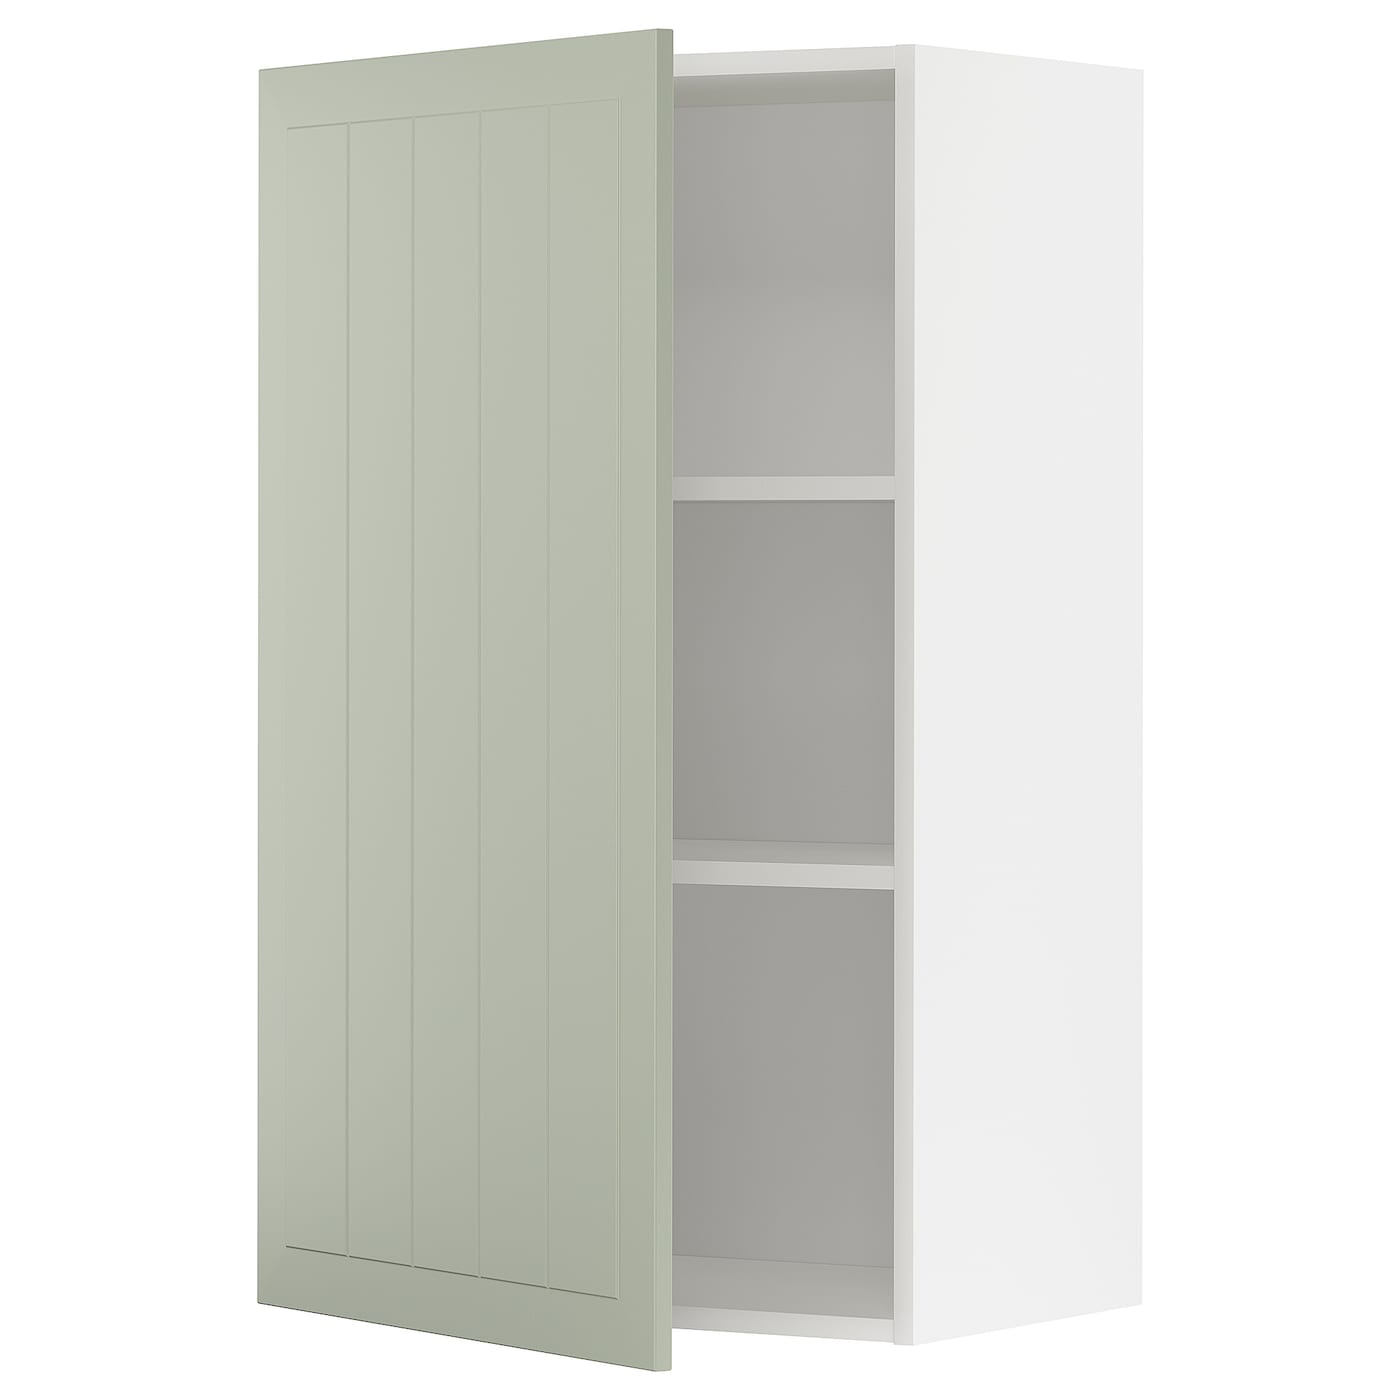 Навесной шкаф с полкой - METOD IKEA/ МЕТОД ИКЕА, 100х60  см, белый/зеленый